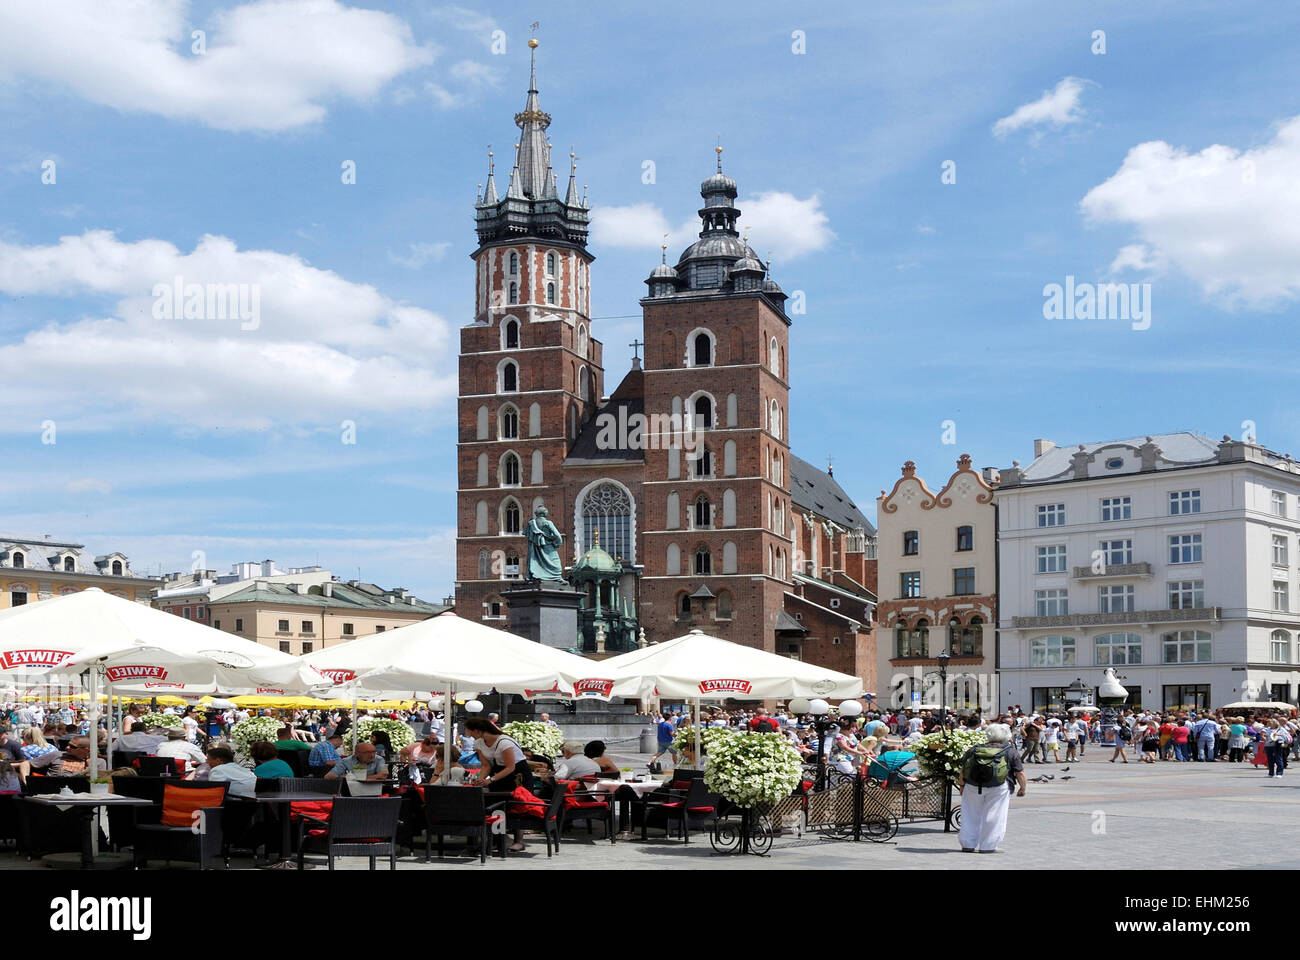 Café de la rue avec les touristes en face de l'église Sainte Marie sur le marché principal de Cracovie en Pologne. Achtung : Nur zur redaktion Banque D'Images